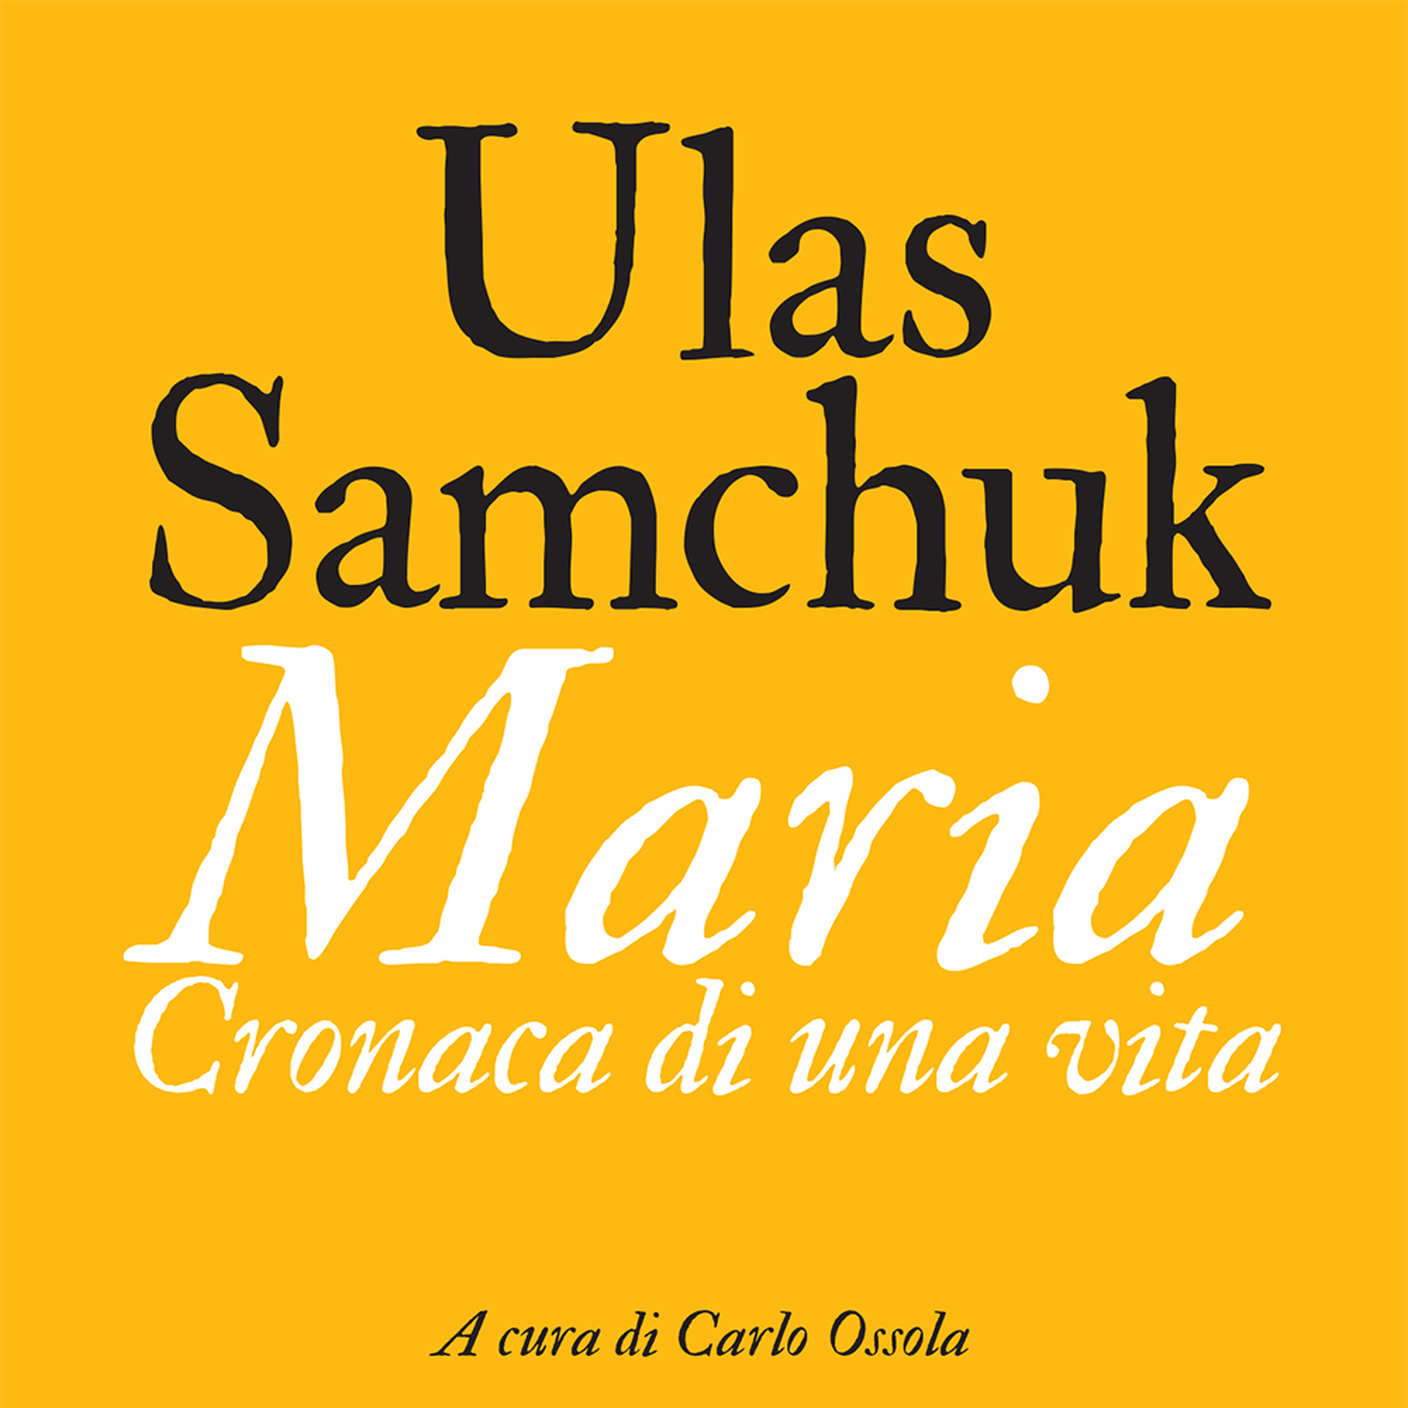 "Maria: Cronaca di una vita" di Ulas Samchuck; Edizioni Clichy (dettaglio copertina) 